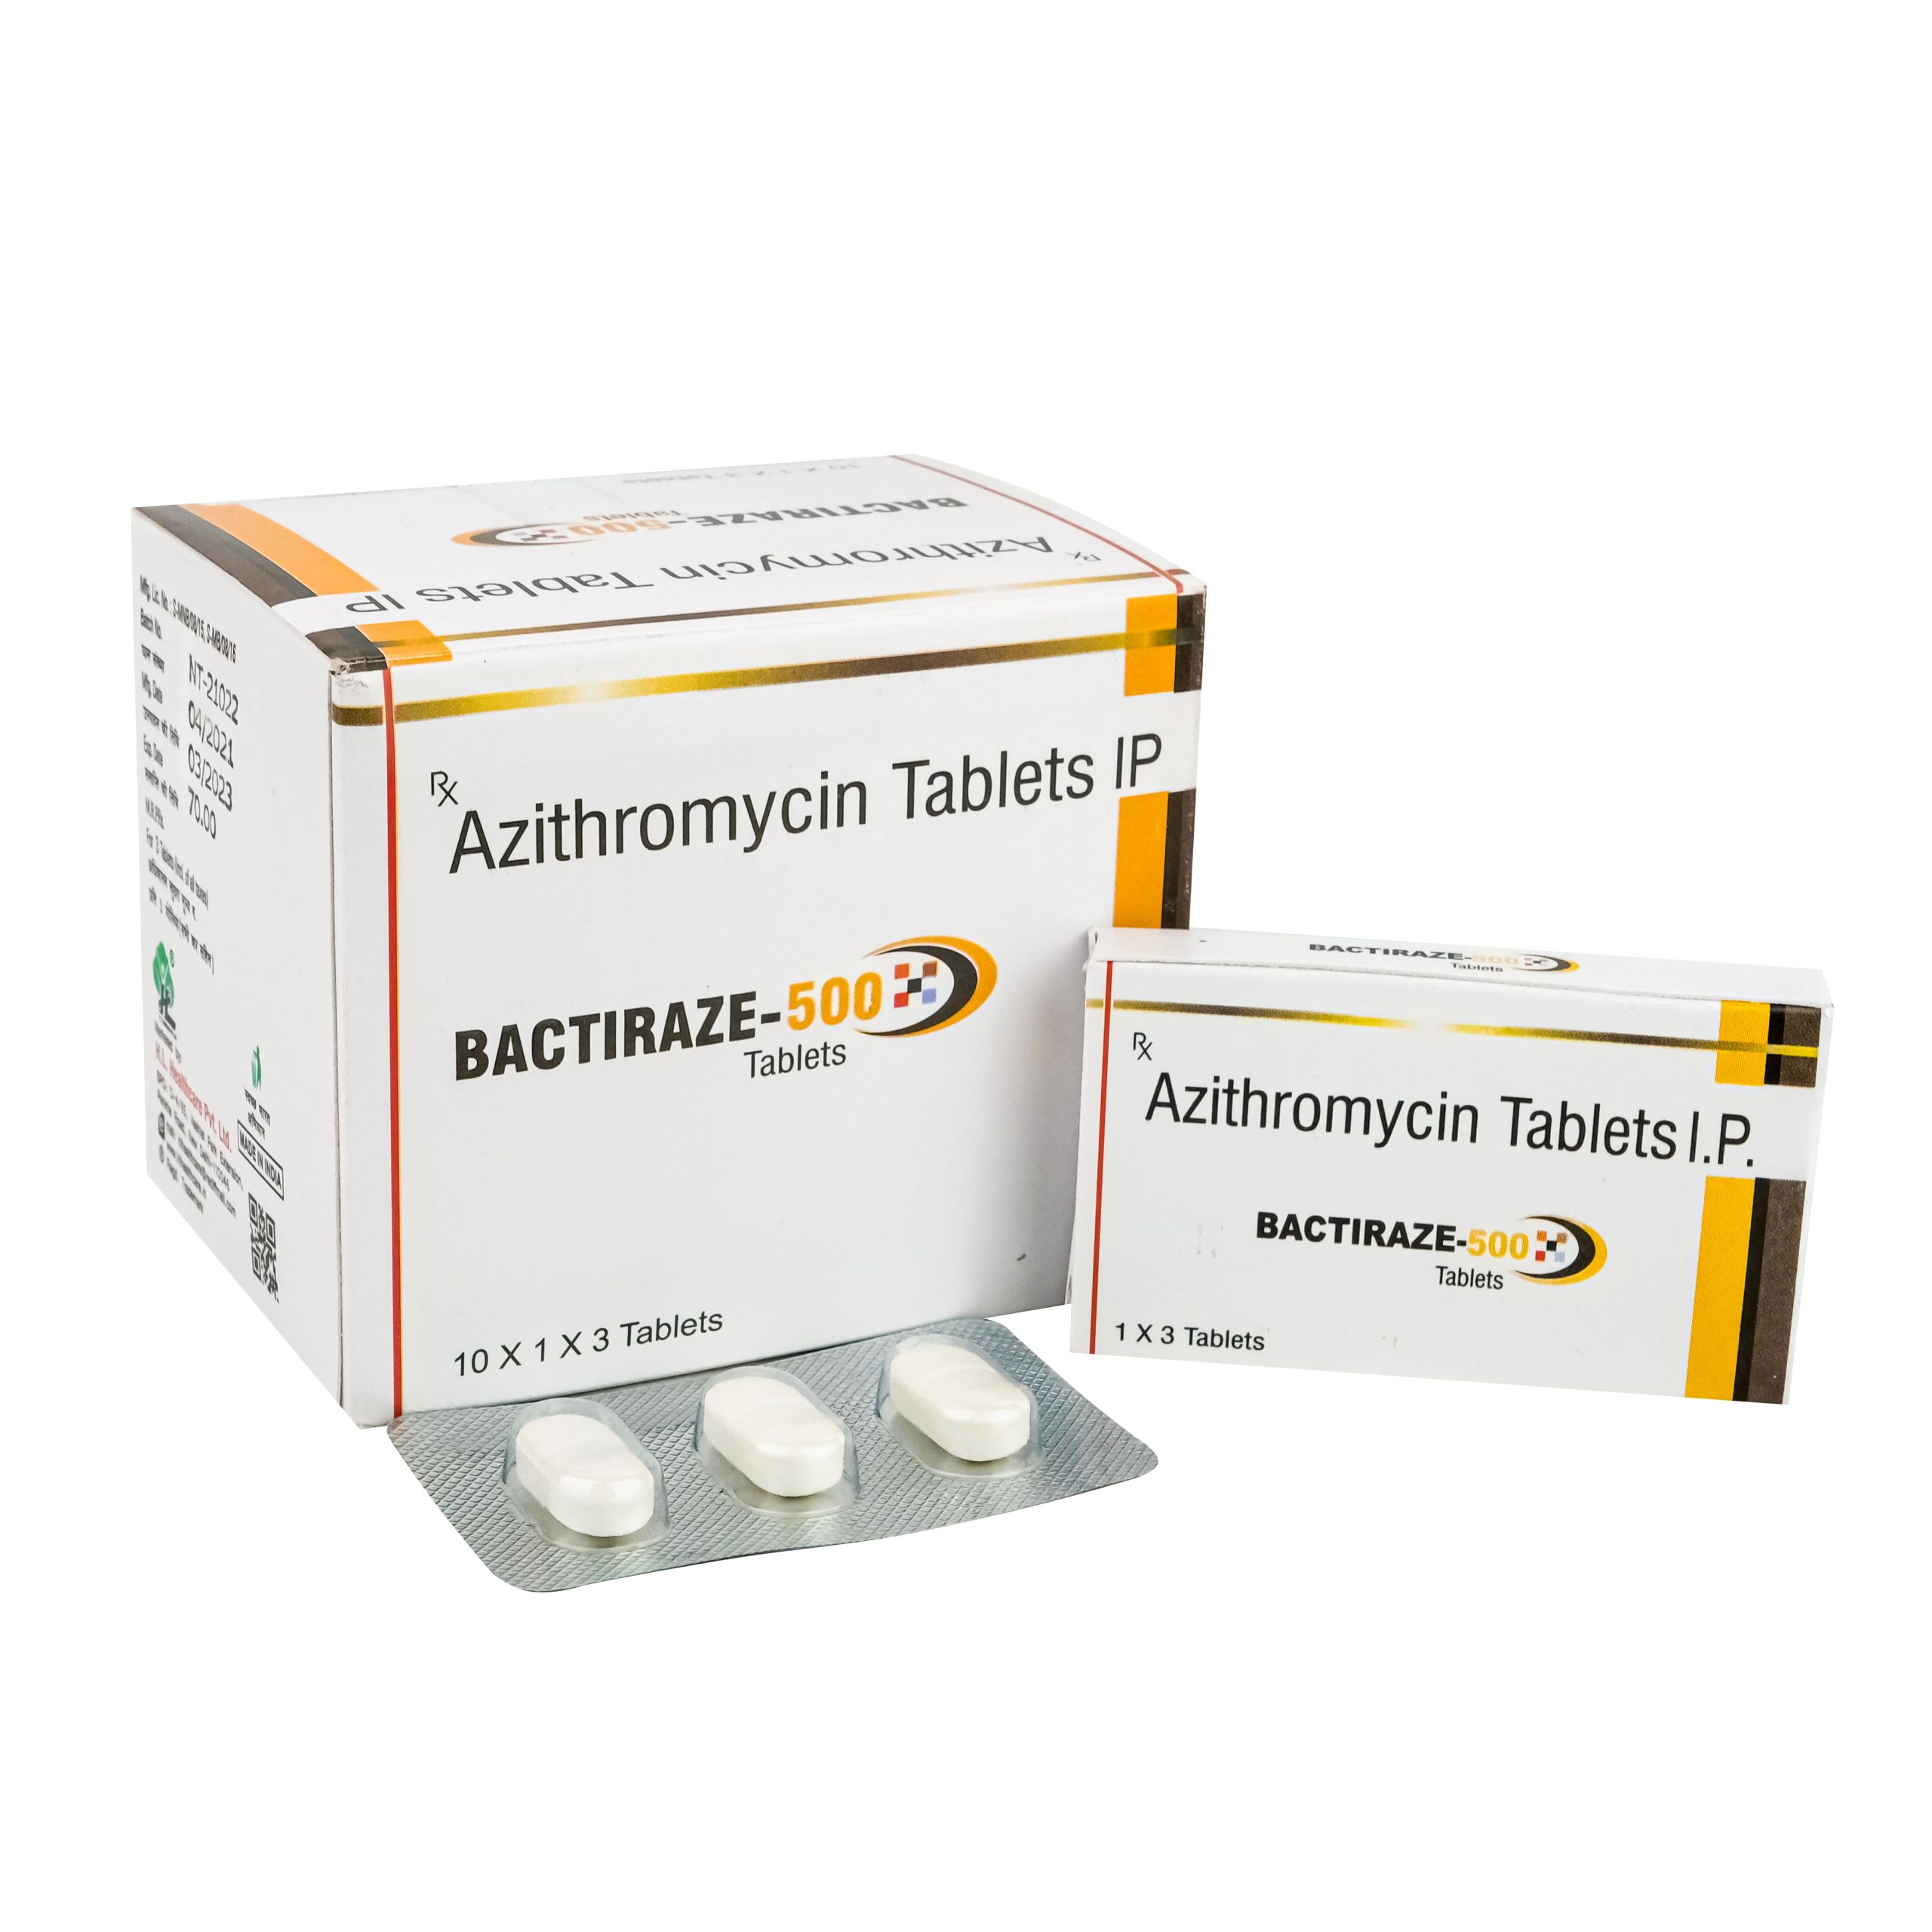 Azithromycin 500mg tablets